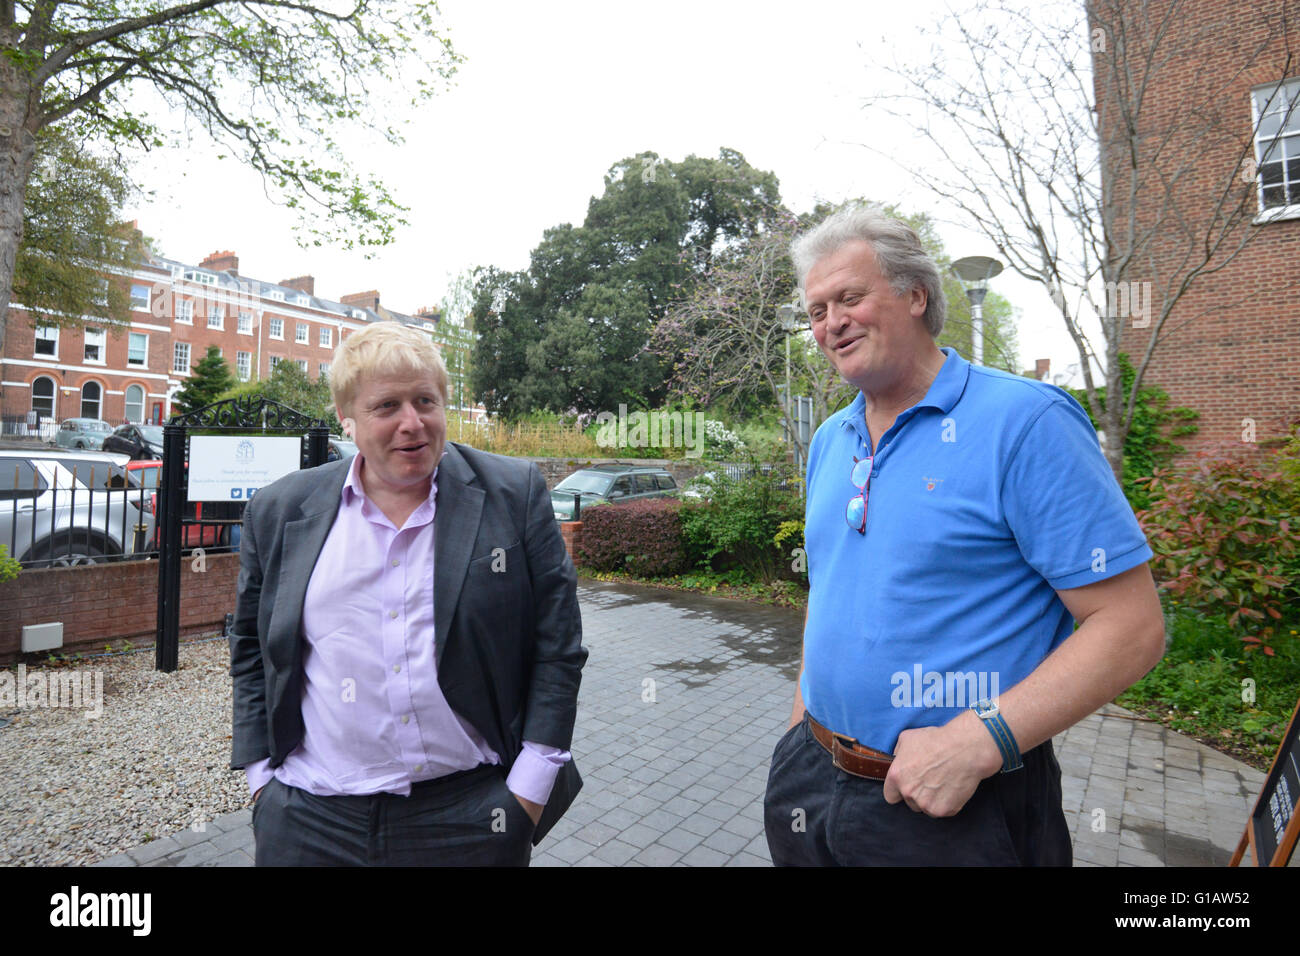 BORIS JOHNSON se reúne con TIM MARTIN el día del anuncio del Brexit, Boris se convierte en primer ministro después de una serie de donaciones de Tim Martin al partido conservador Foto de stock